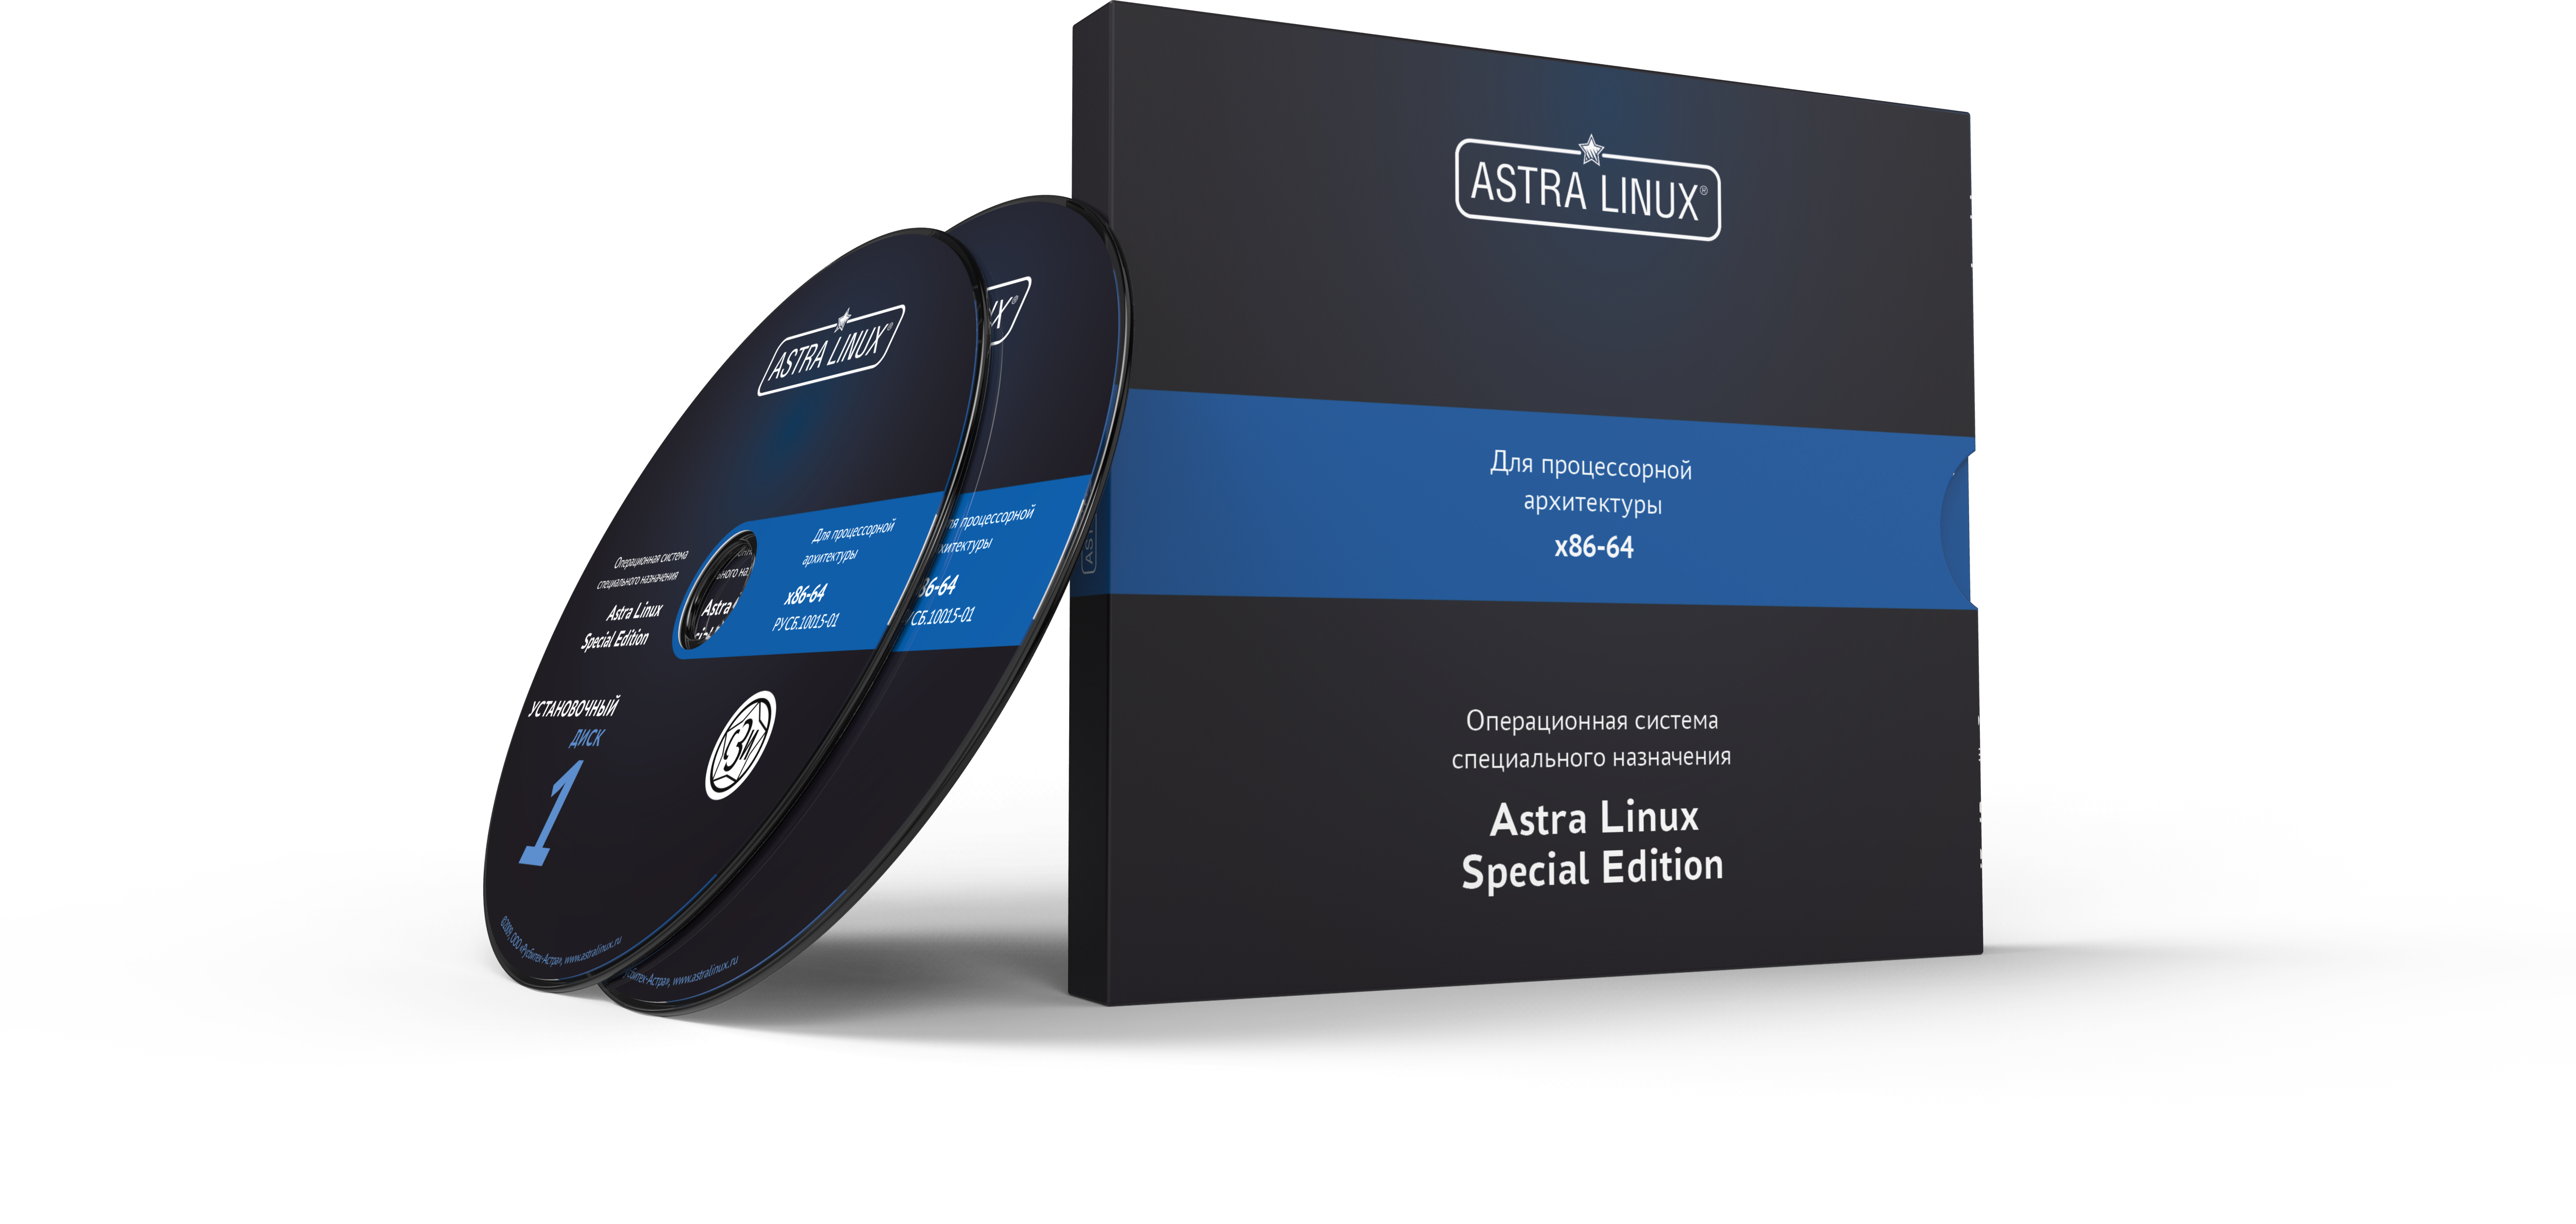 Astra Linux Special Edition 1.7 - Воронеж, РУСБ.10015-01 (ФСТЭК), электронный, без огр. срока, ТП "Привилегированная" 36 мес.